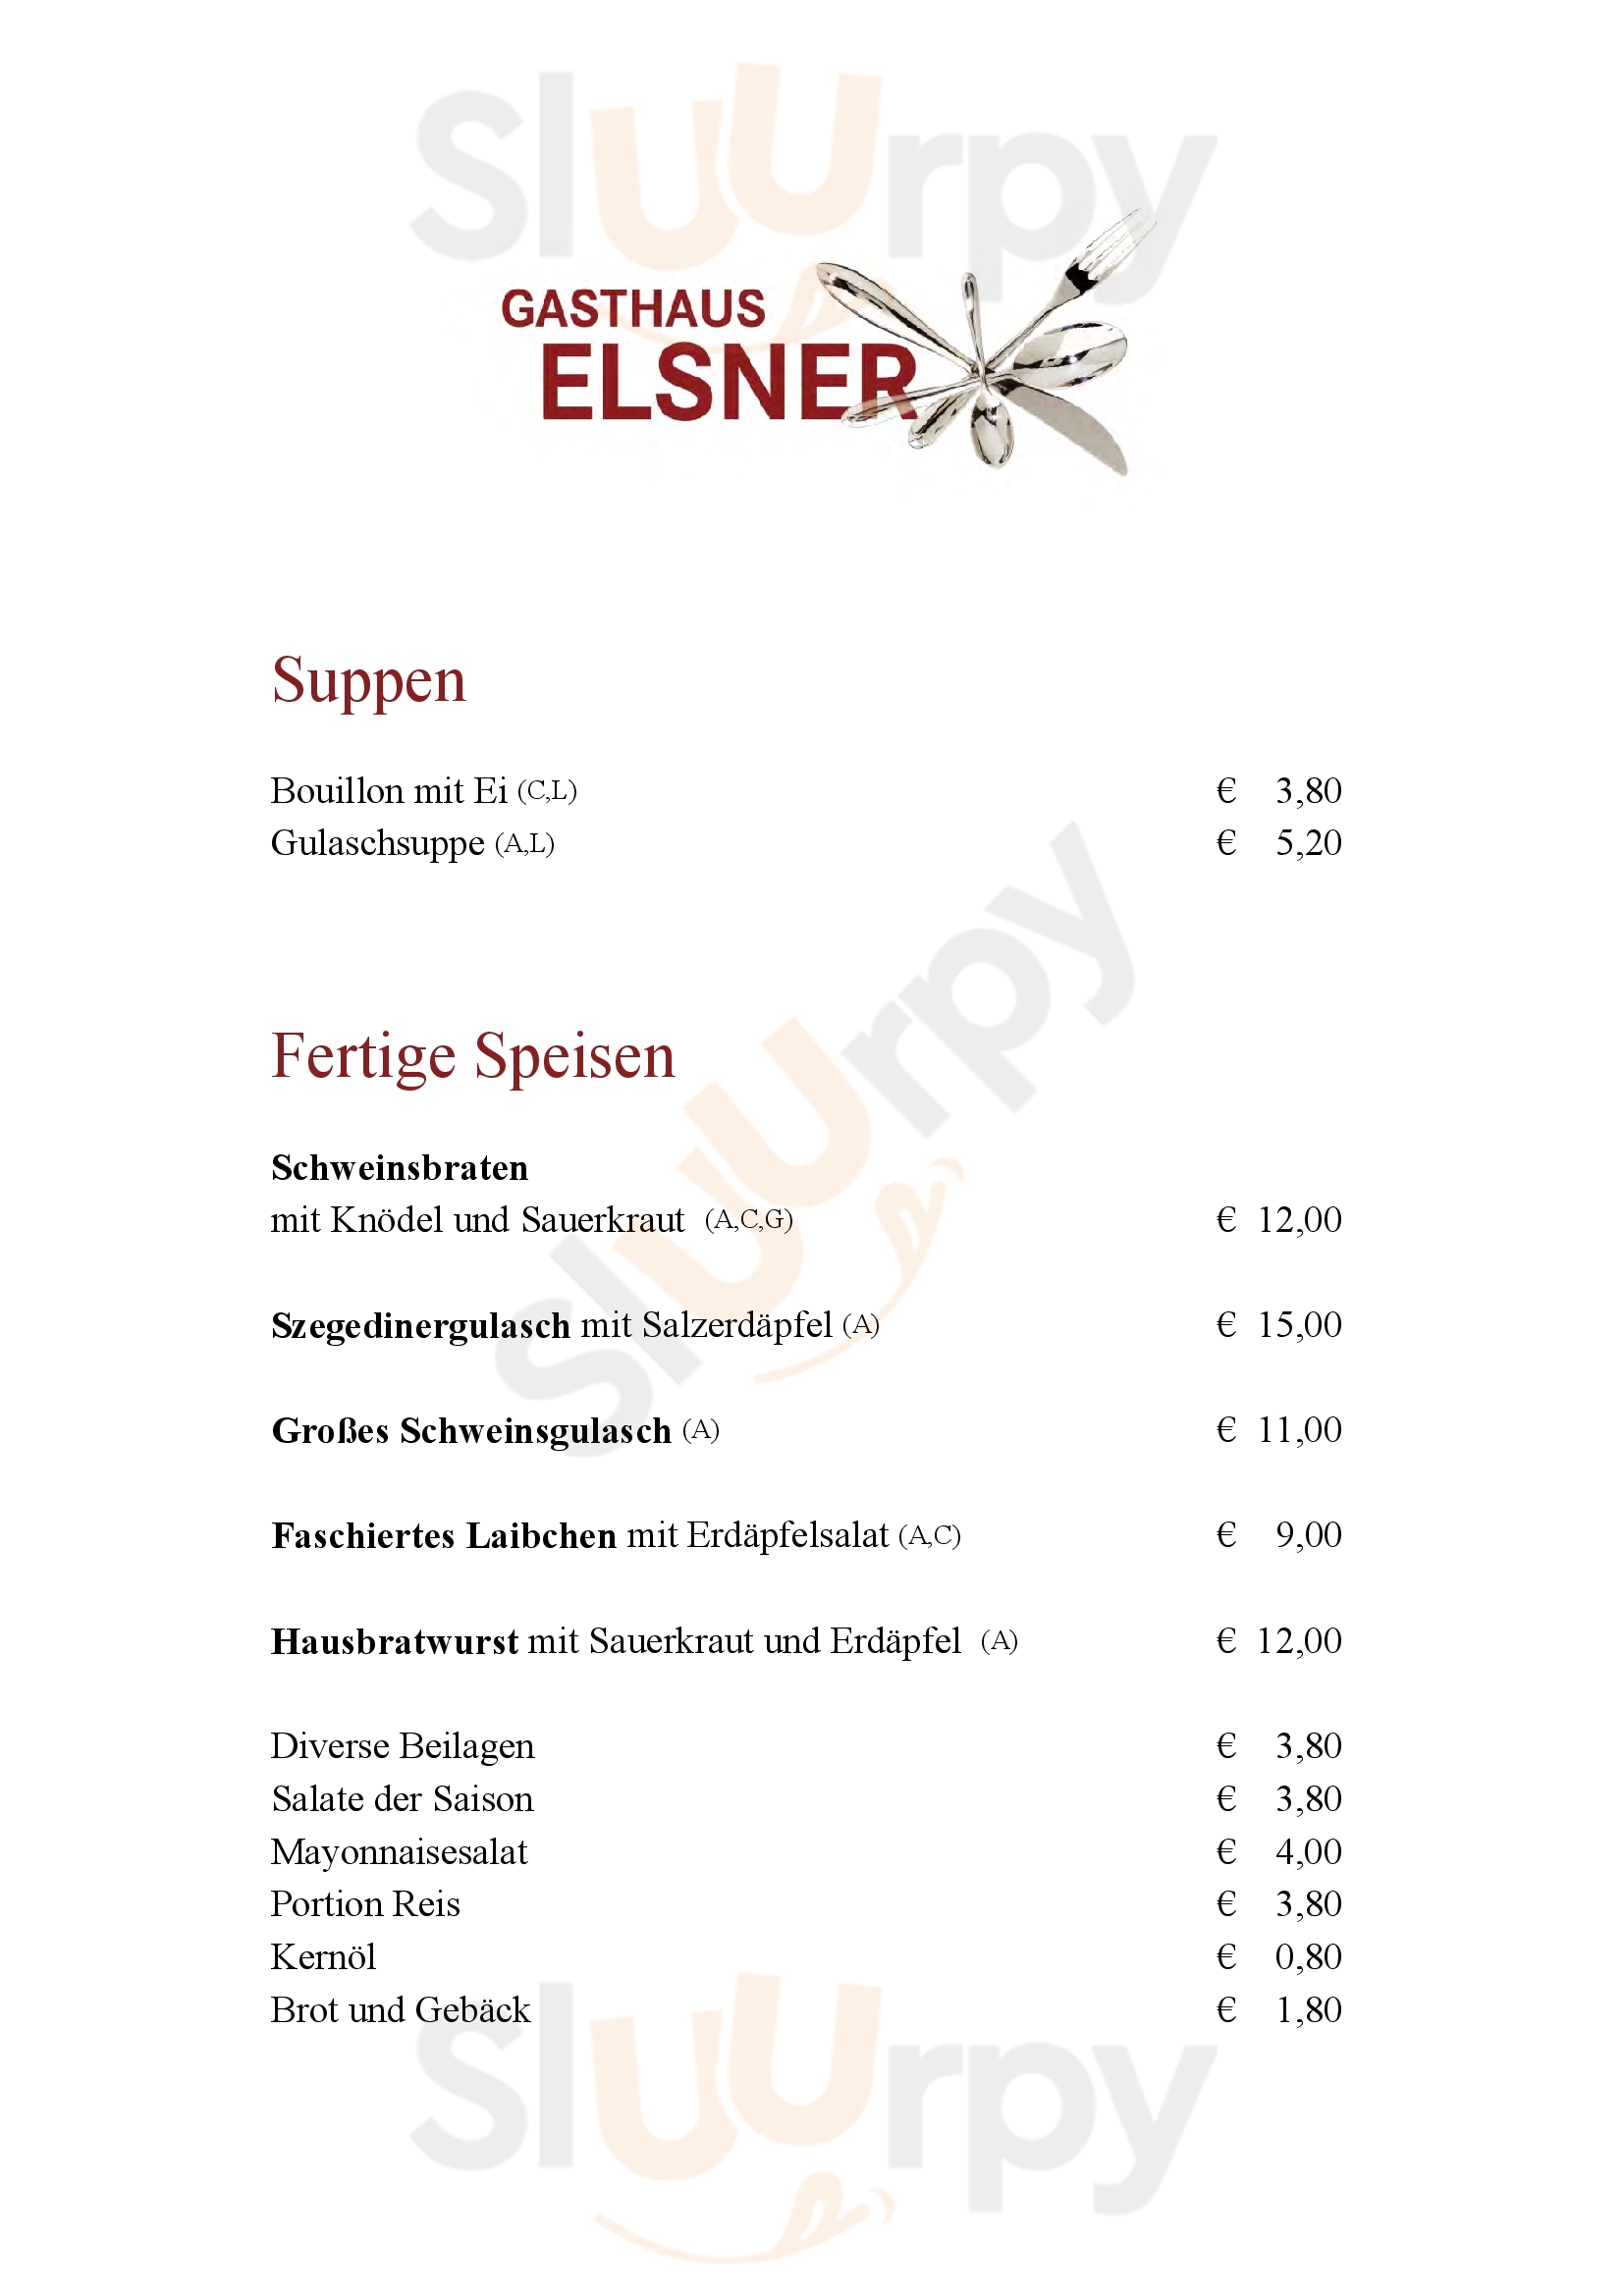 Gasthaus Elsner Wien Menu - 1